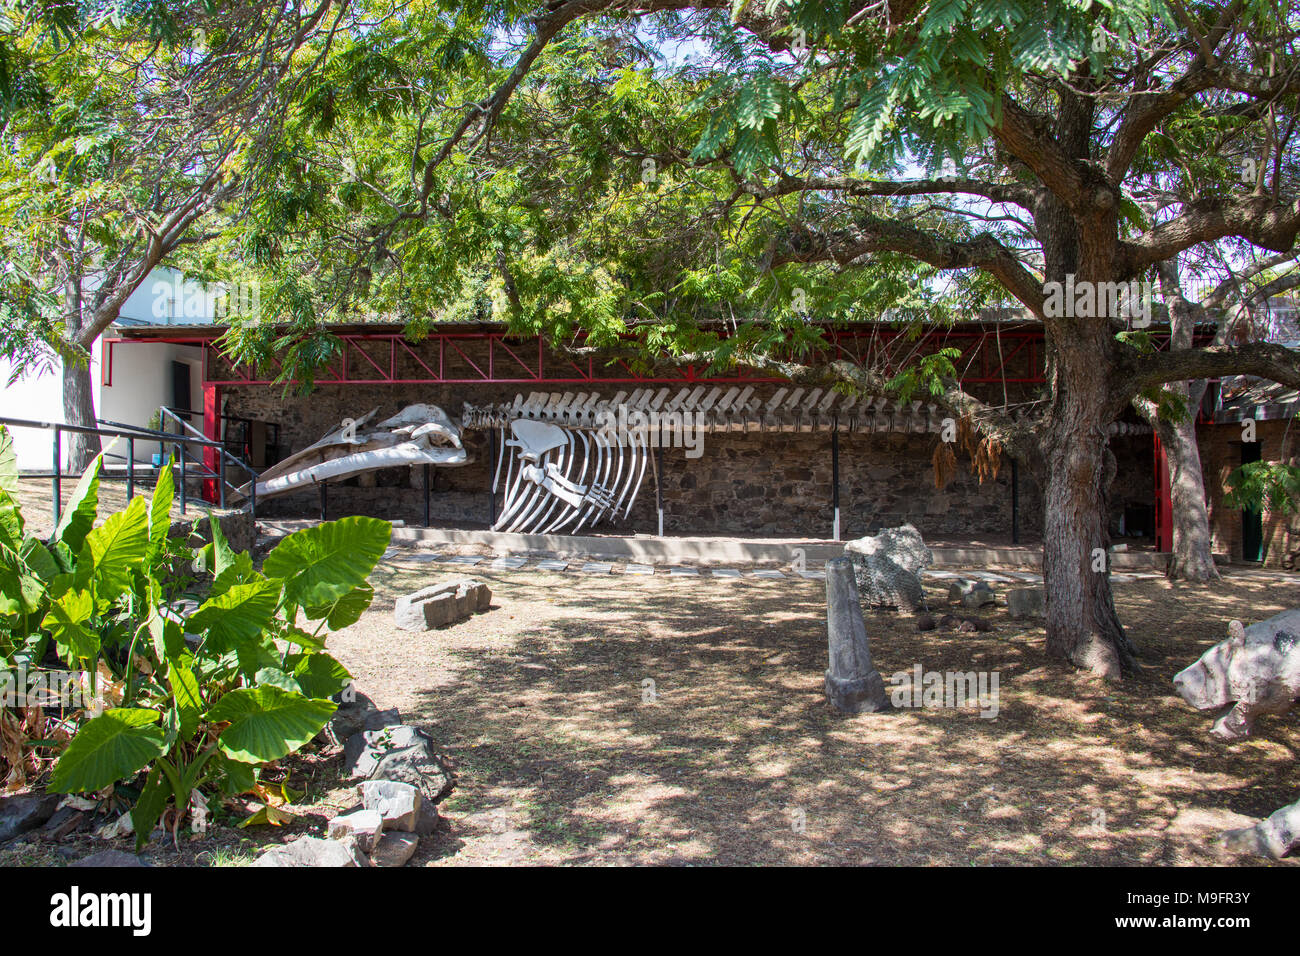 Museo Municipal. esqueleto de ballena azul. El barrio histórico. Colonia del Sacramento. Uruguay Foto de stock